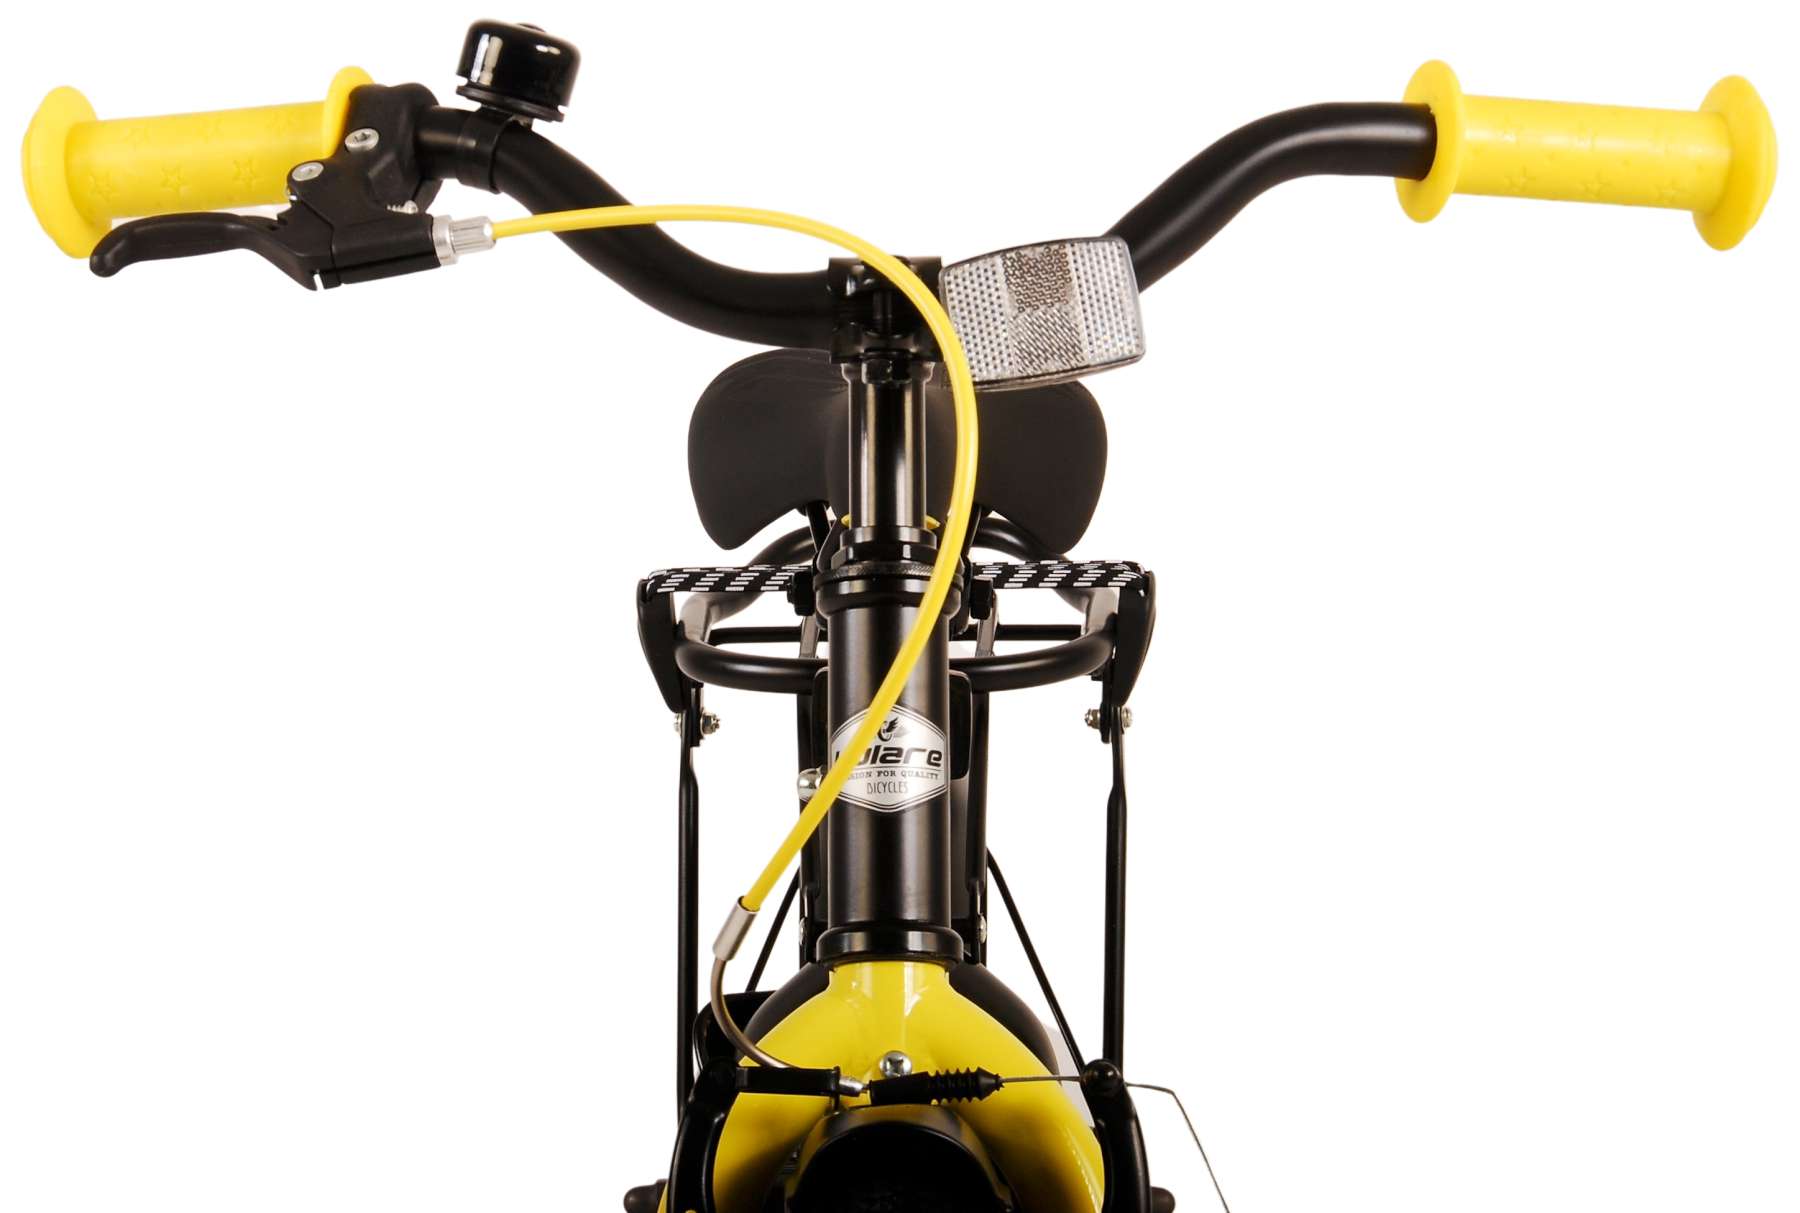 Kinderfahrrad Thombike für Jungen 12 Zoll Kinderrad in Schwarz Gelb